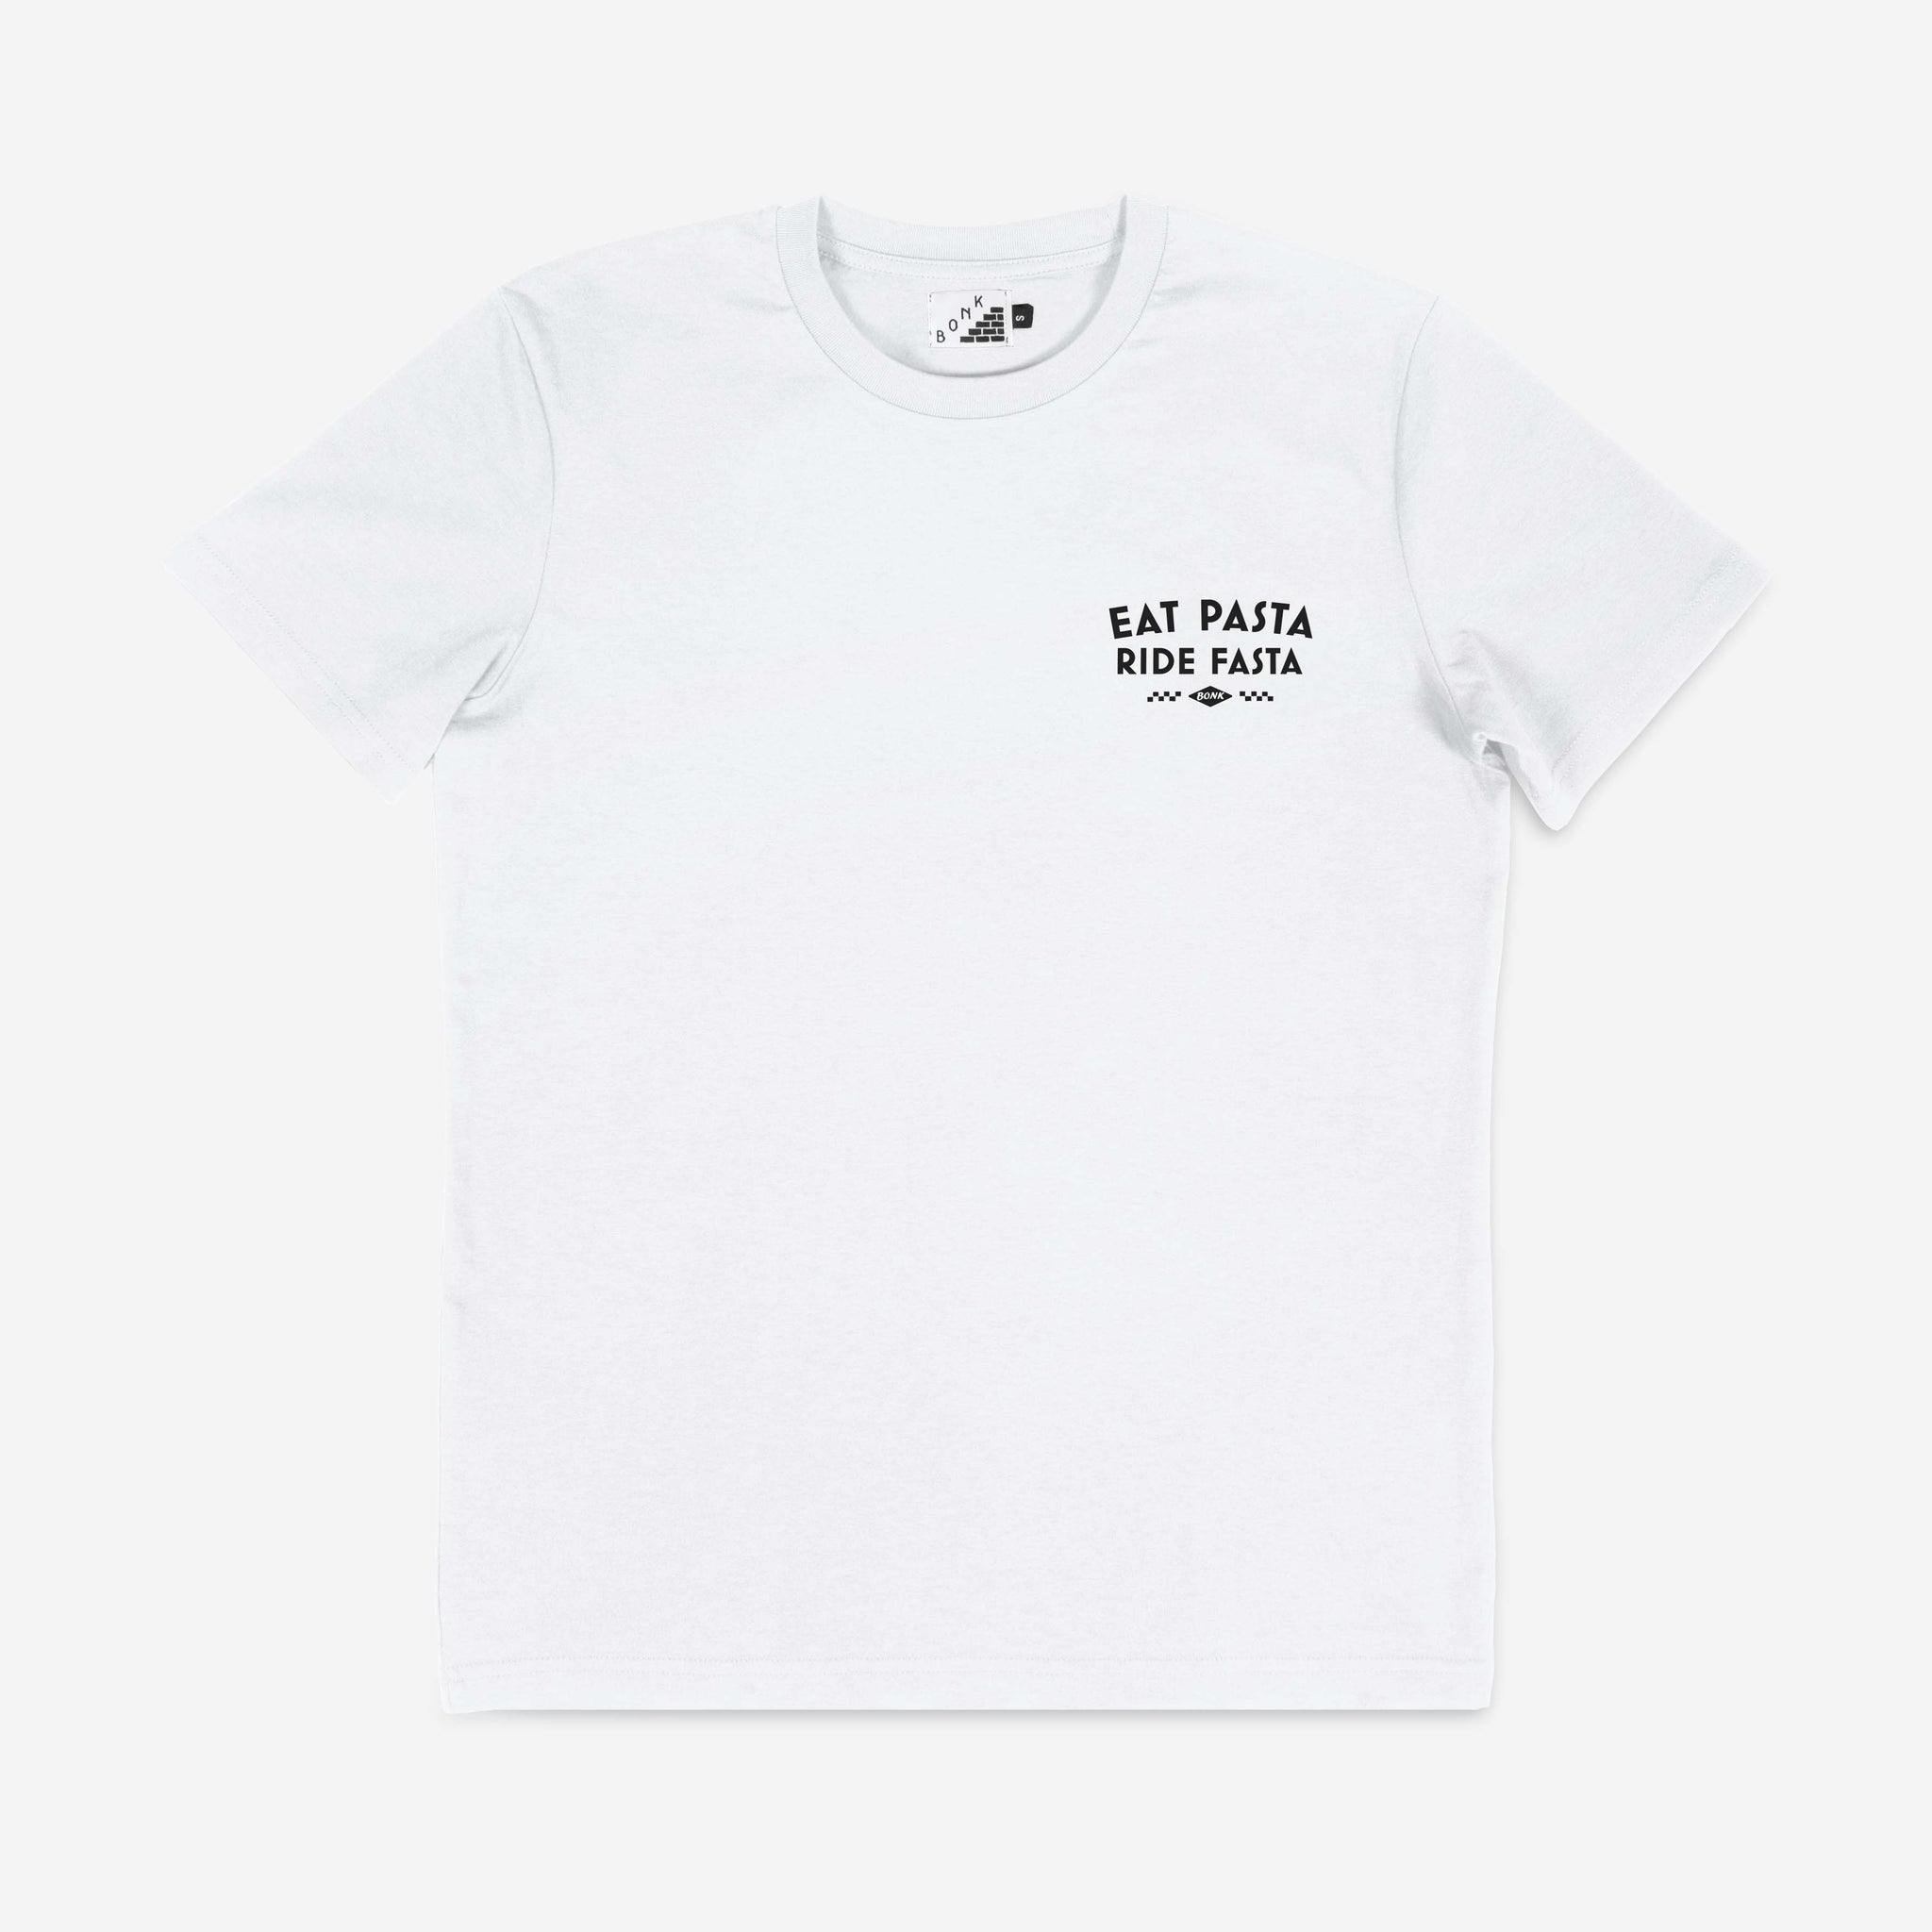 Pasta T-shirt – BONK Cycling Club